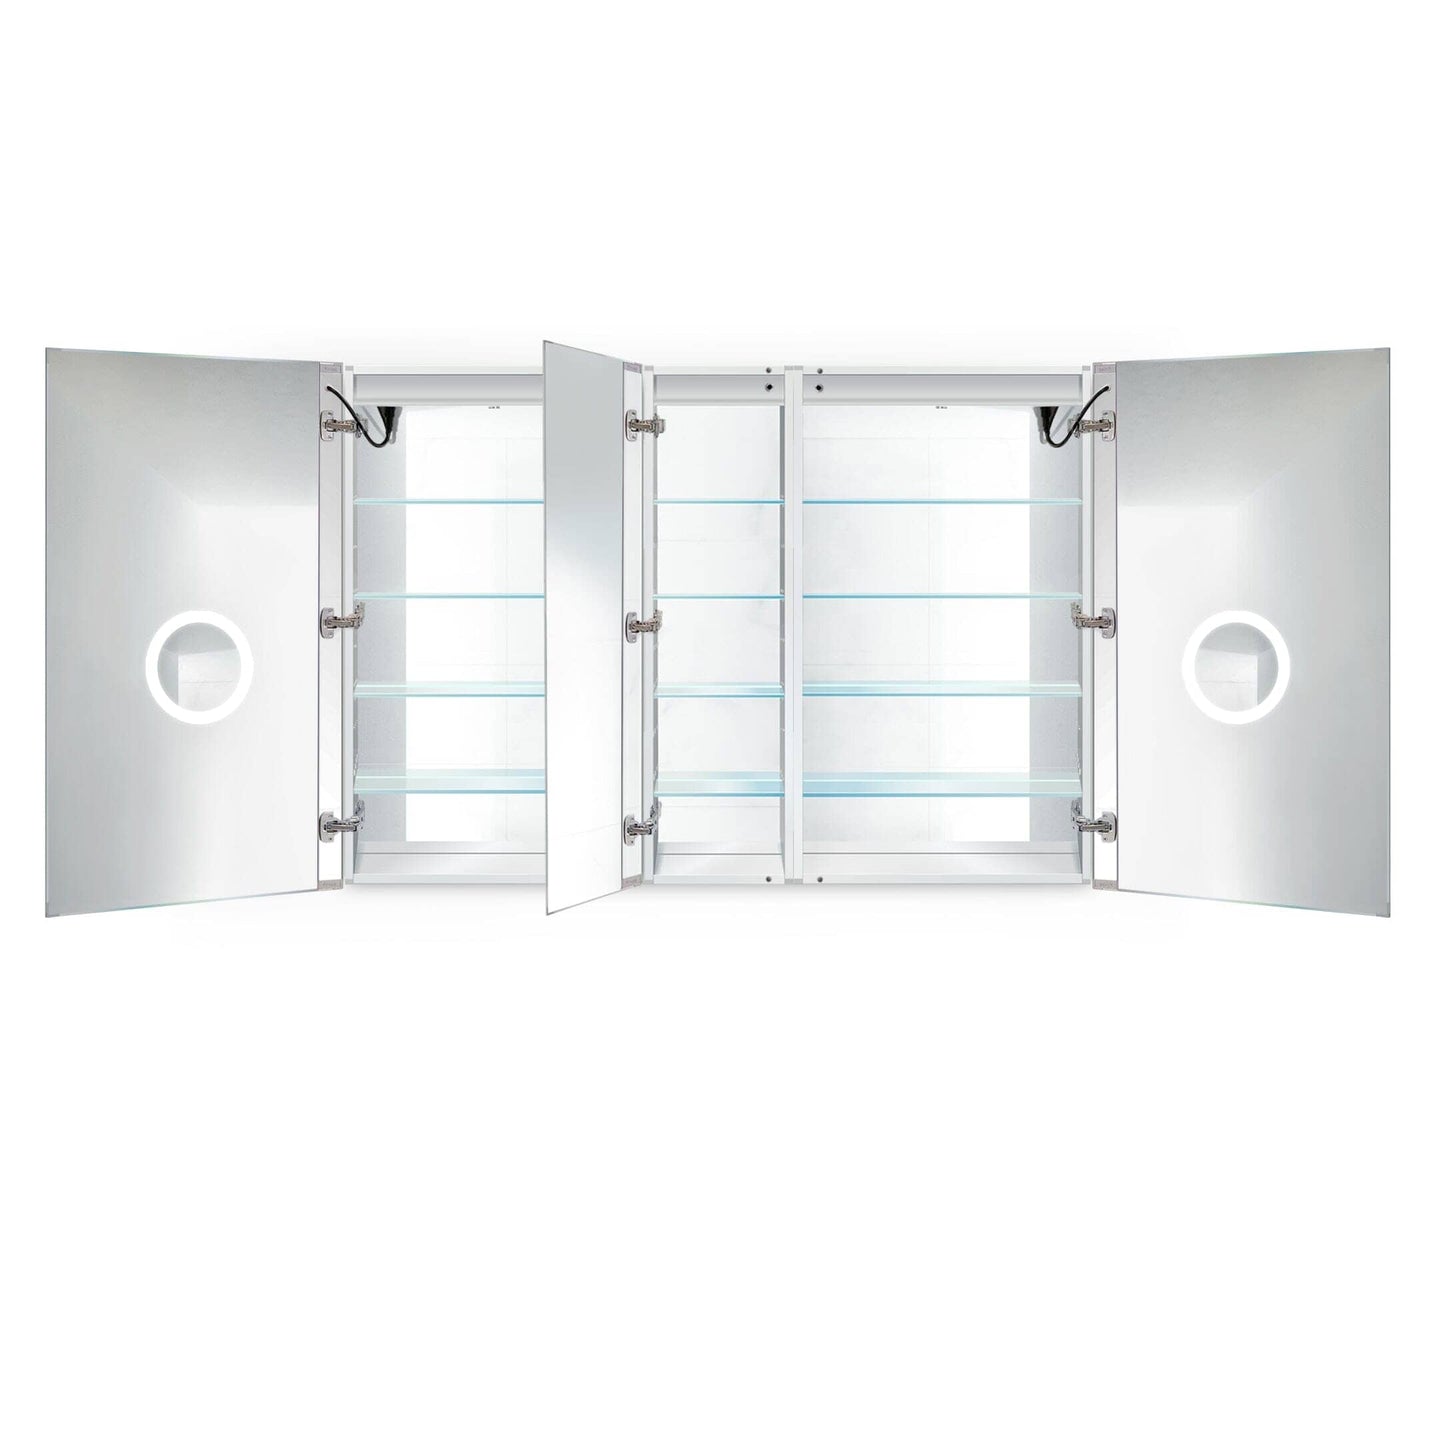 LED Medicine Cabinet - Krugg Dual Lighted - SVANGE6042DLLR